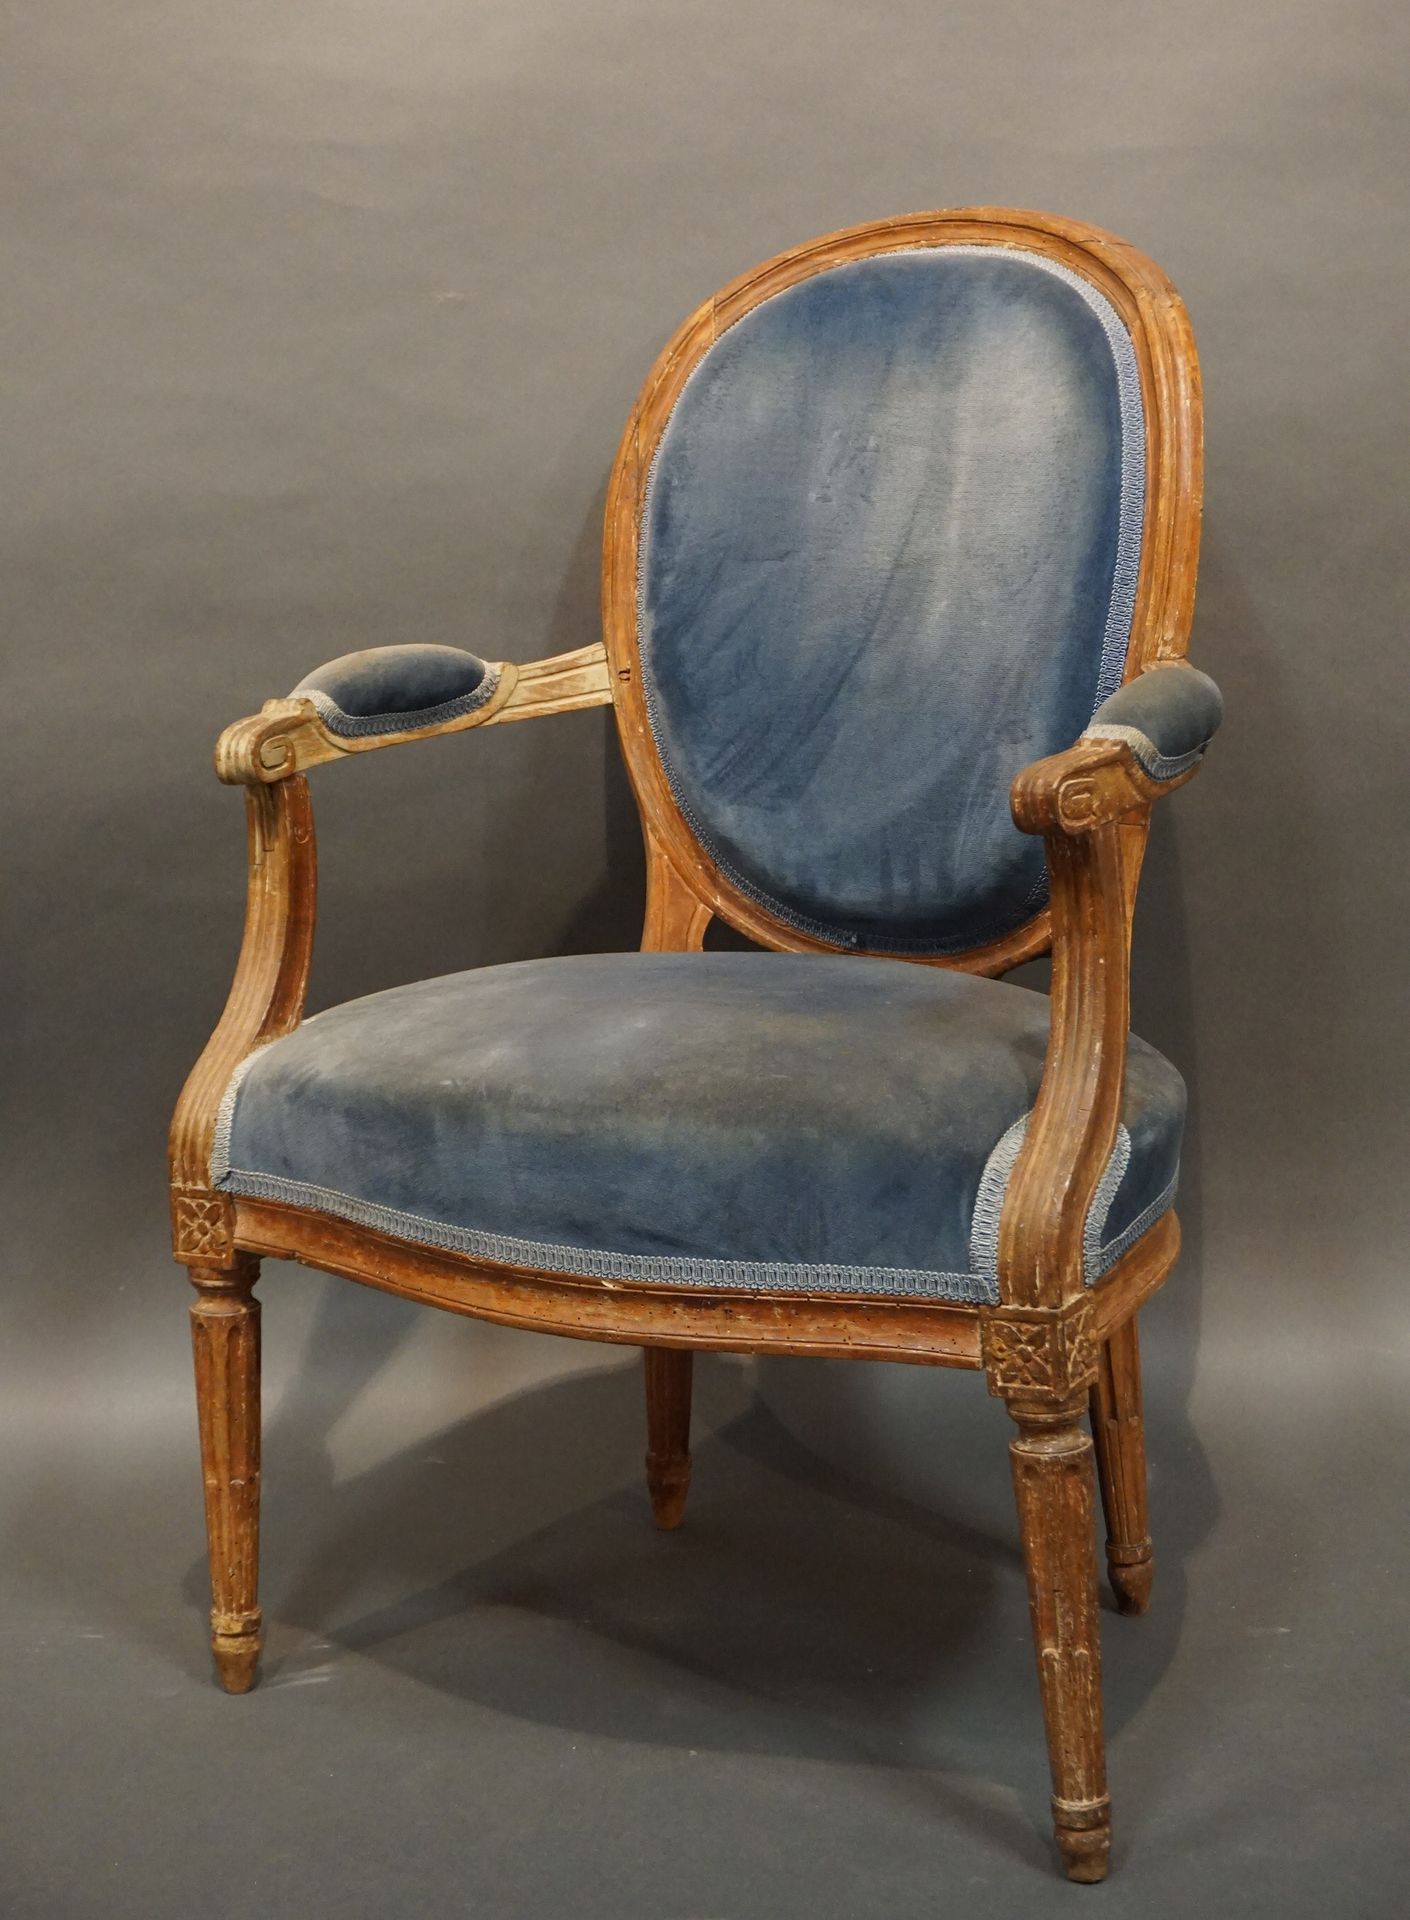 FAUTEUIL 
奖章扶手椅，天然木质，有凹槽和鱼腿，用蓝色天鹅绒做软垫。路易十六时期（磨损）。91x61x60厘米